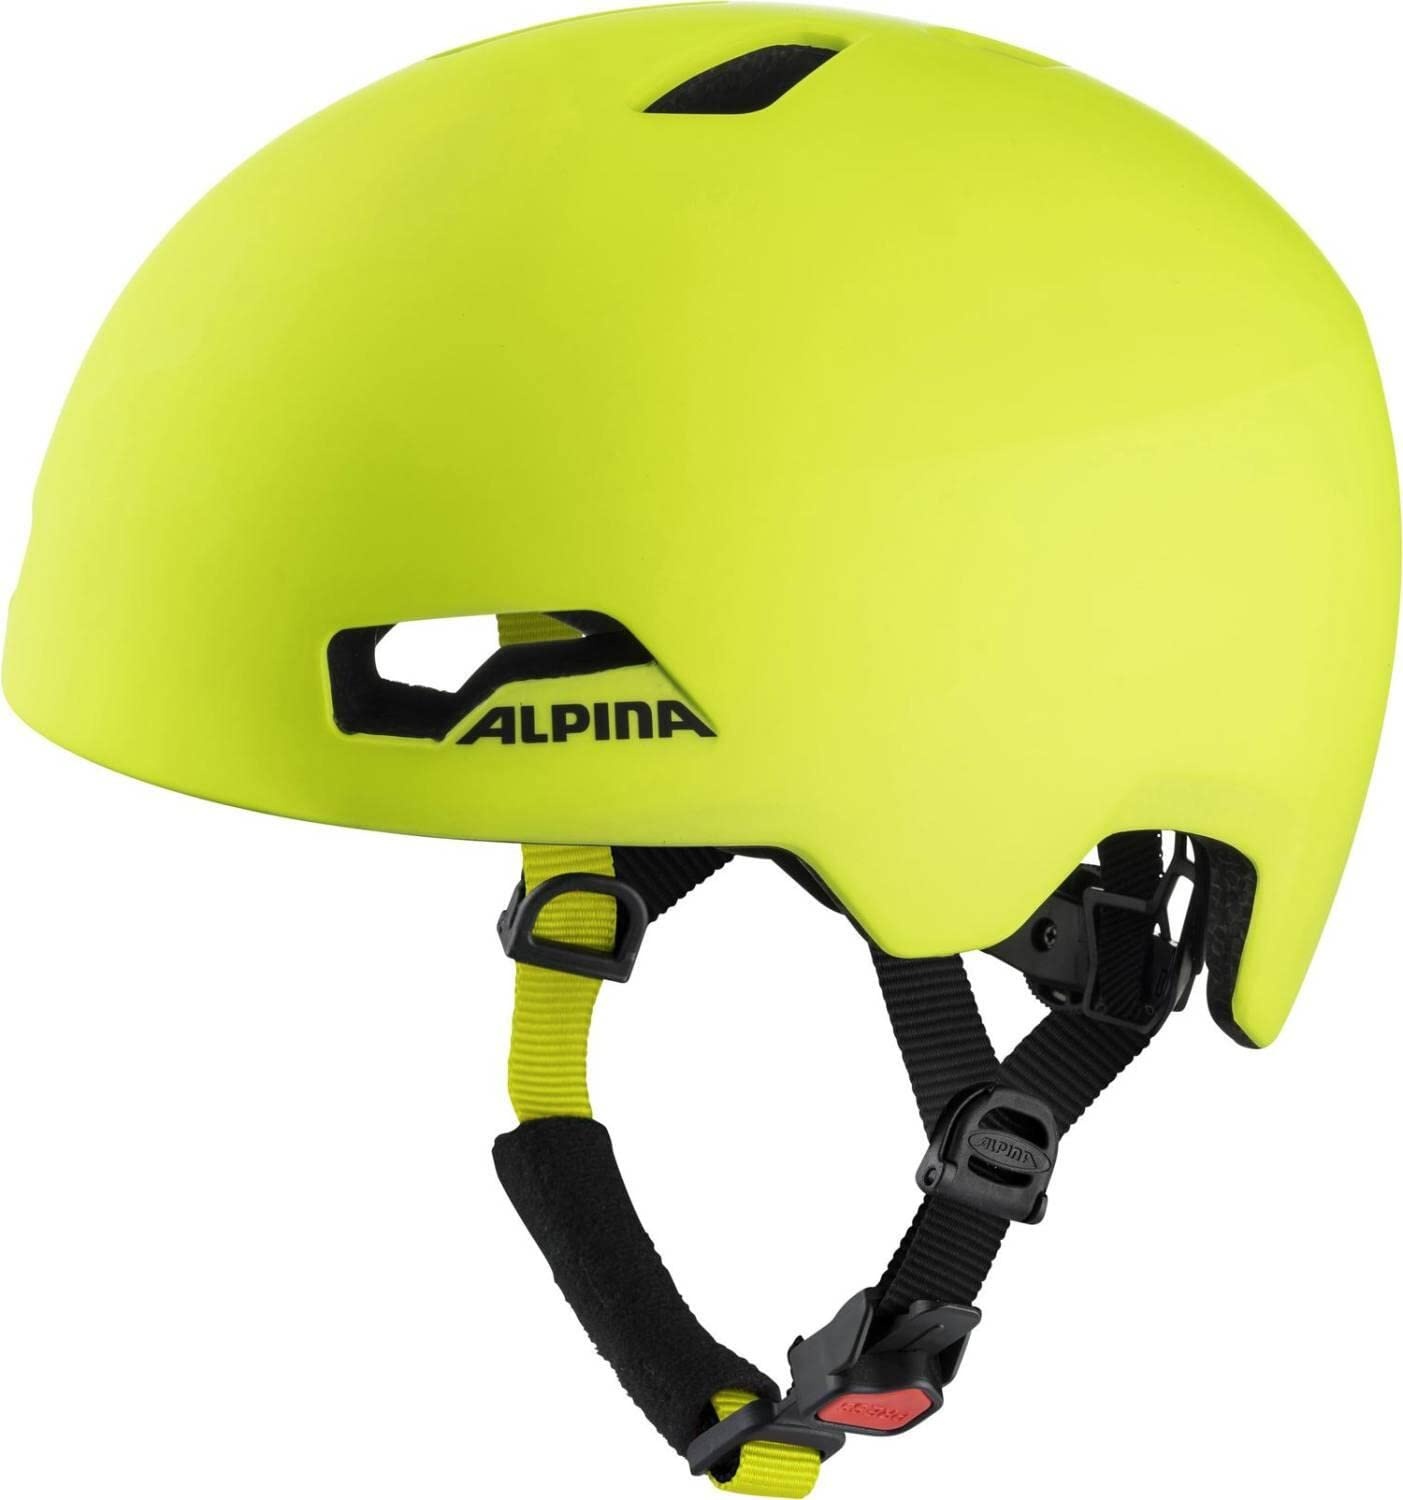 ALPINA HACKNEY - Leichter, Bruchfester & Optimal Klimatisierter Fahrradhelm Mit Nachrüstbarem LED Für Kinder, be visible matt, 47-51 cm